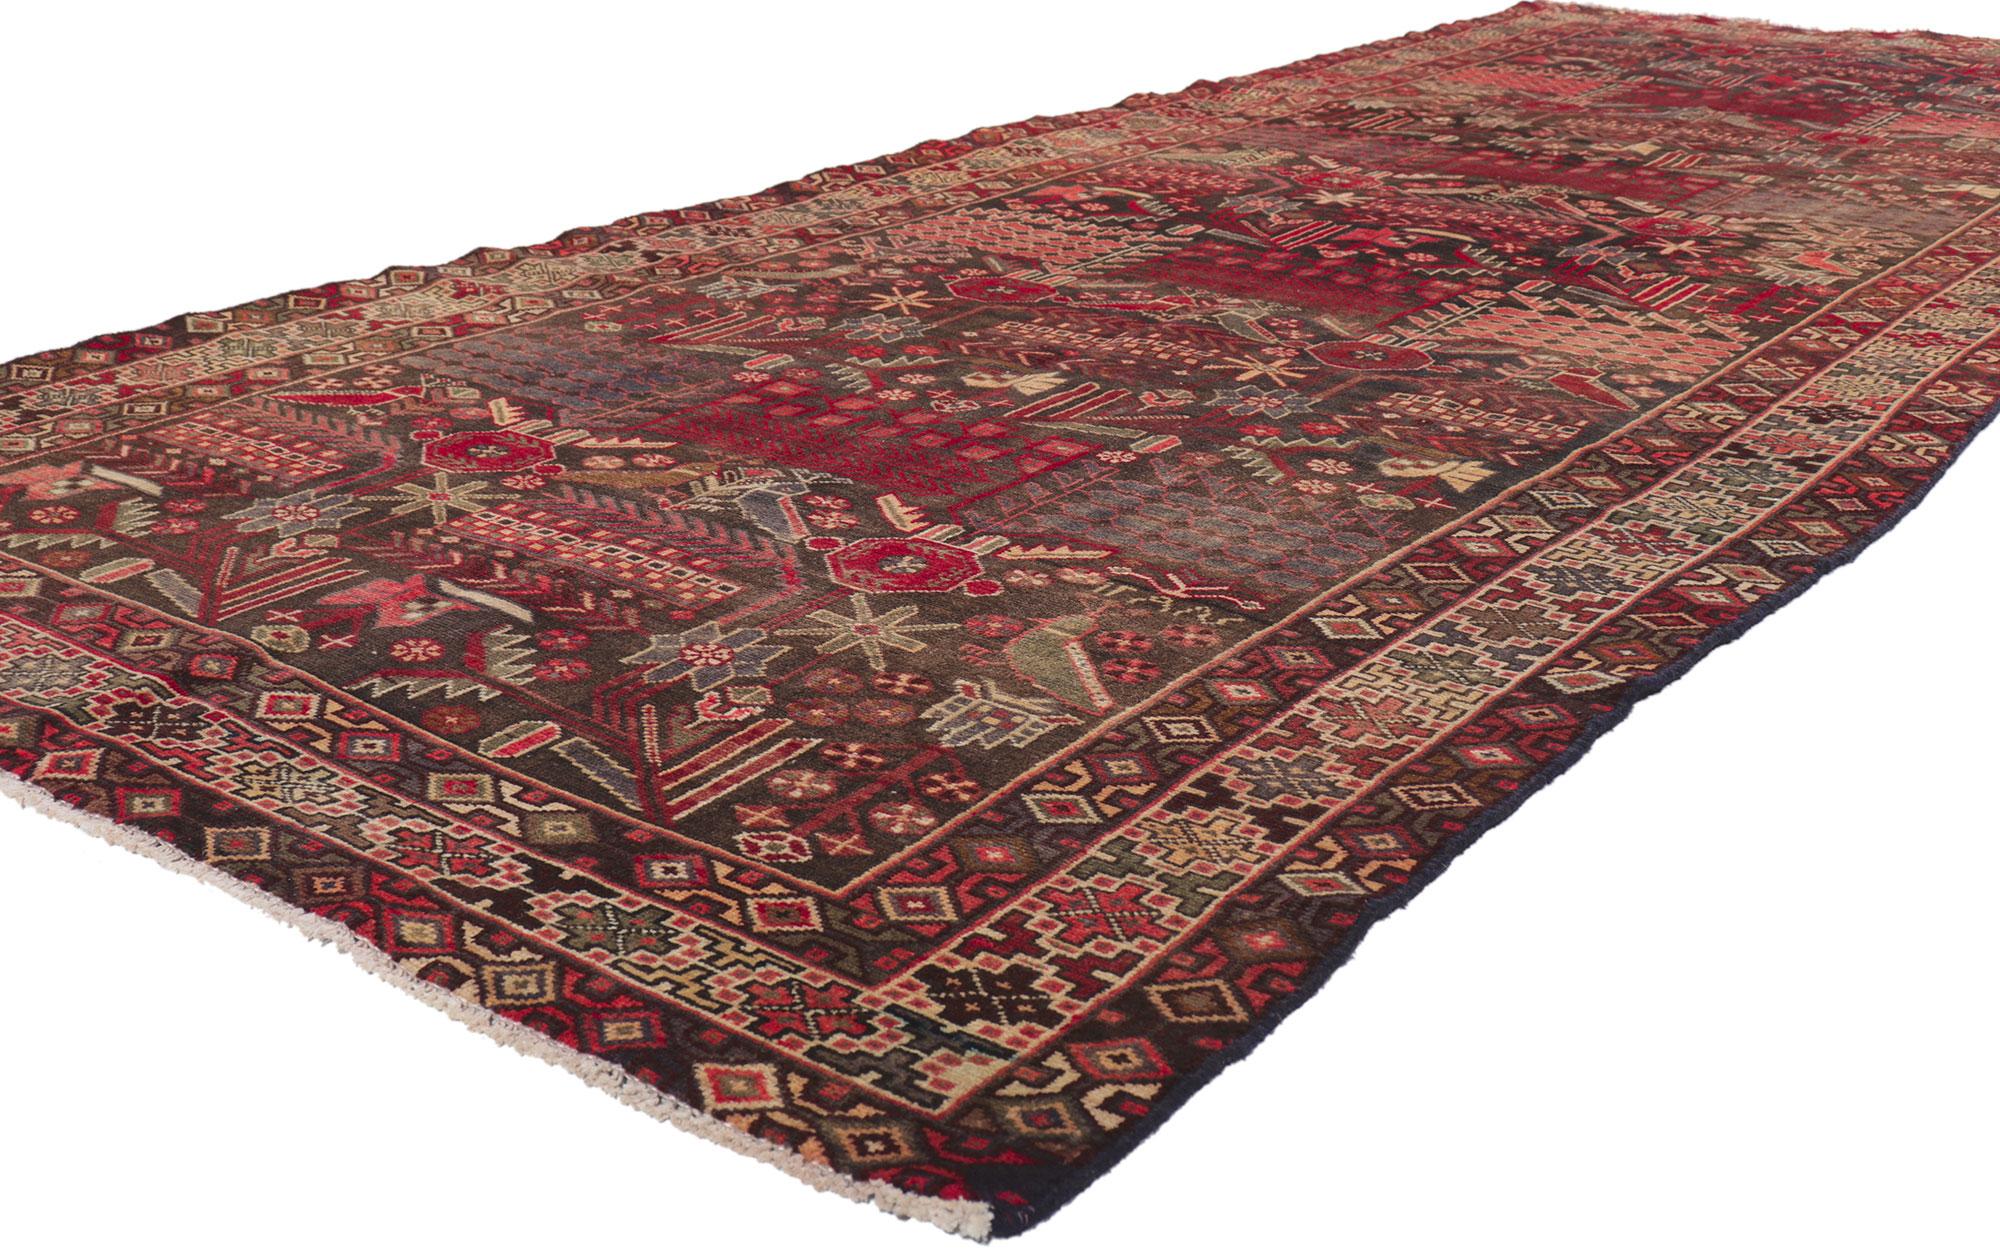 61224 Vintage Persian Bakhtiari Rug, 04'11 x 12'07. Dieser handgeknüpfte persische Bachtiari-Teppich aus Wolle besticht durch seine raue Schönheit, seine unglaublichen Details und seine Textur. Das geometrische Muster und die lebendige Farbgebung